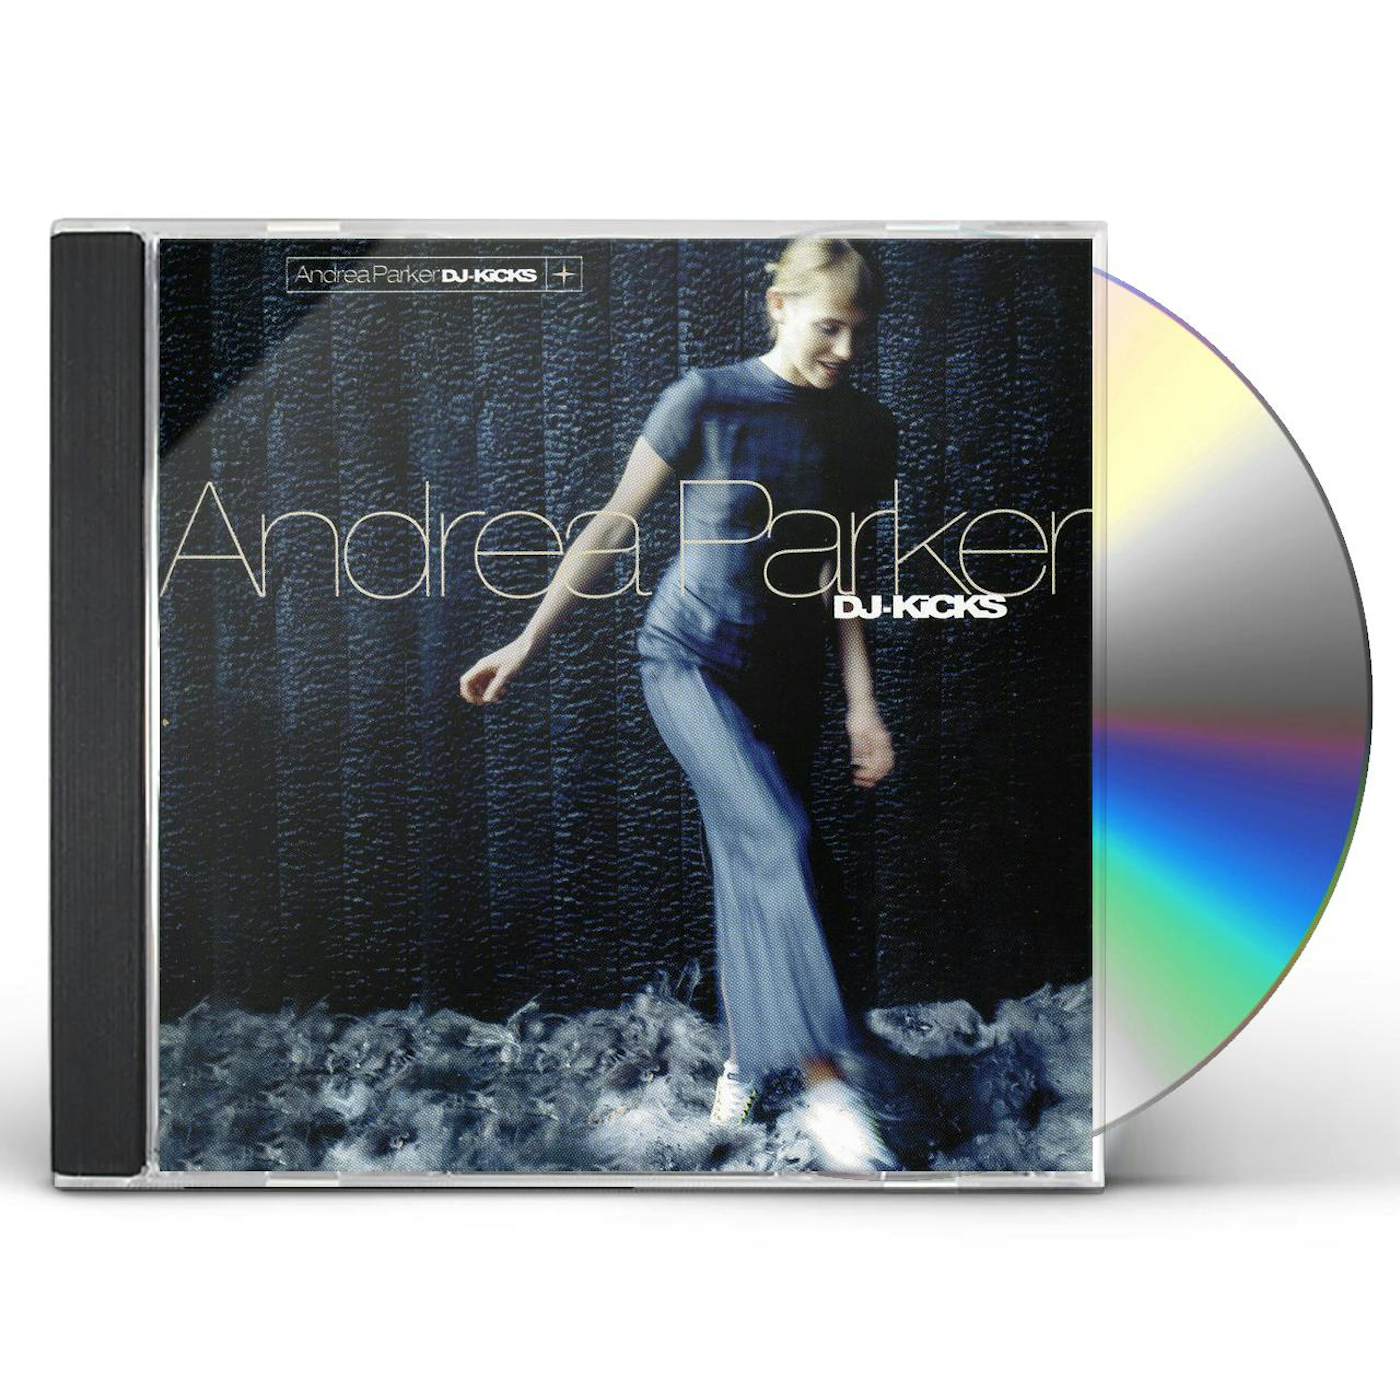 Andrea Parker DJ KICKS CD